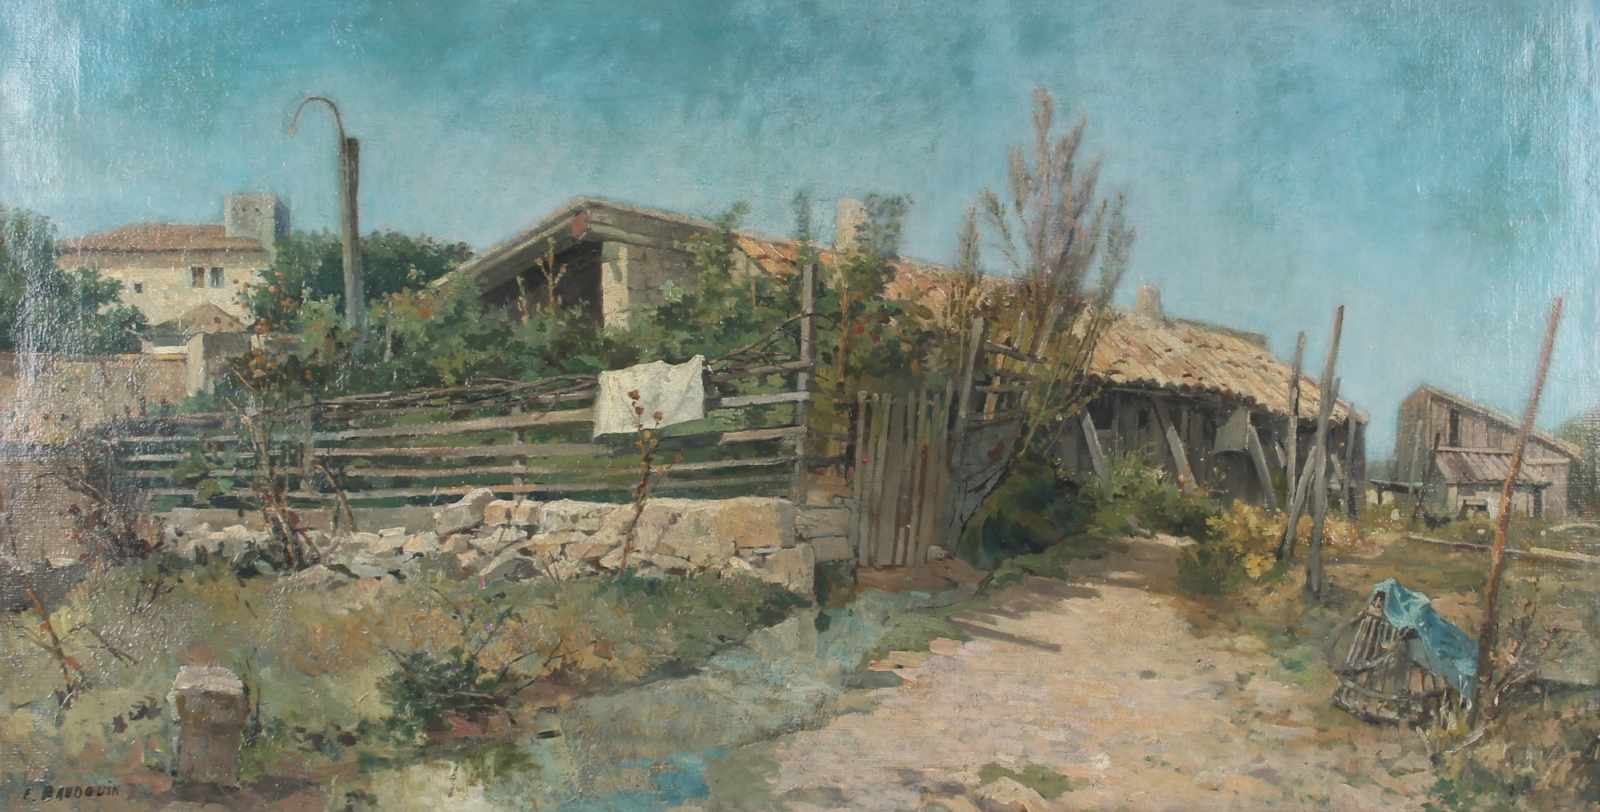 Eugène Baudouin (french 1842-1893) Holzscheune am französischem Dorfrand, wooden barn on the edge of